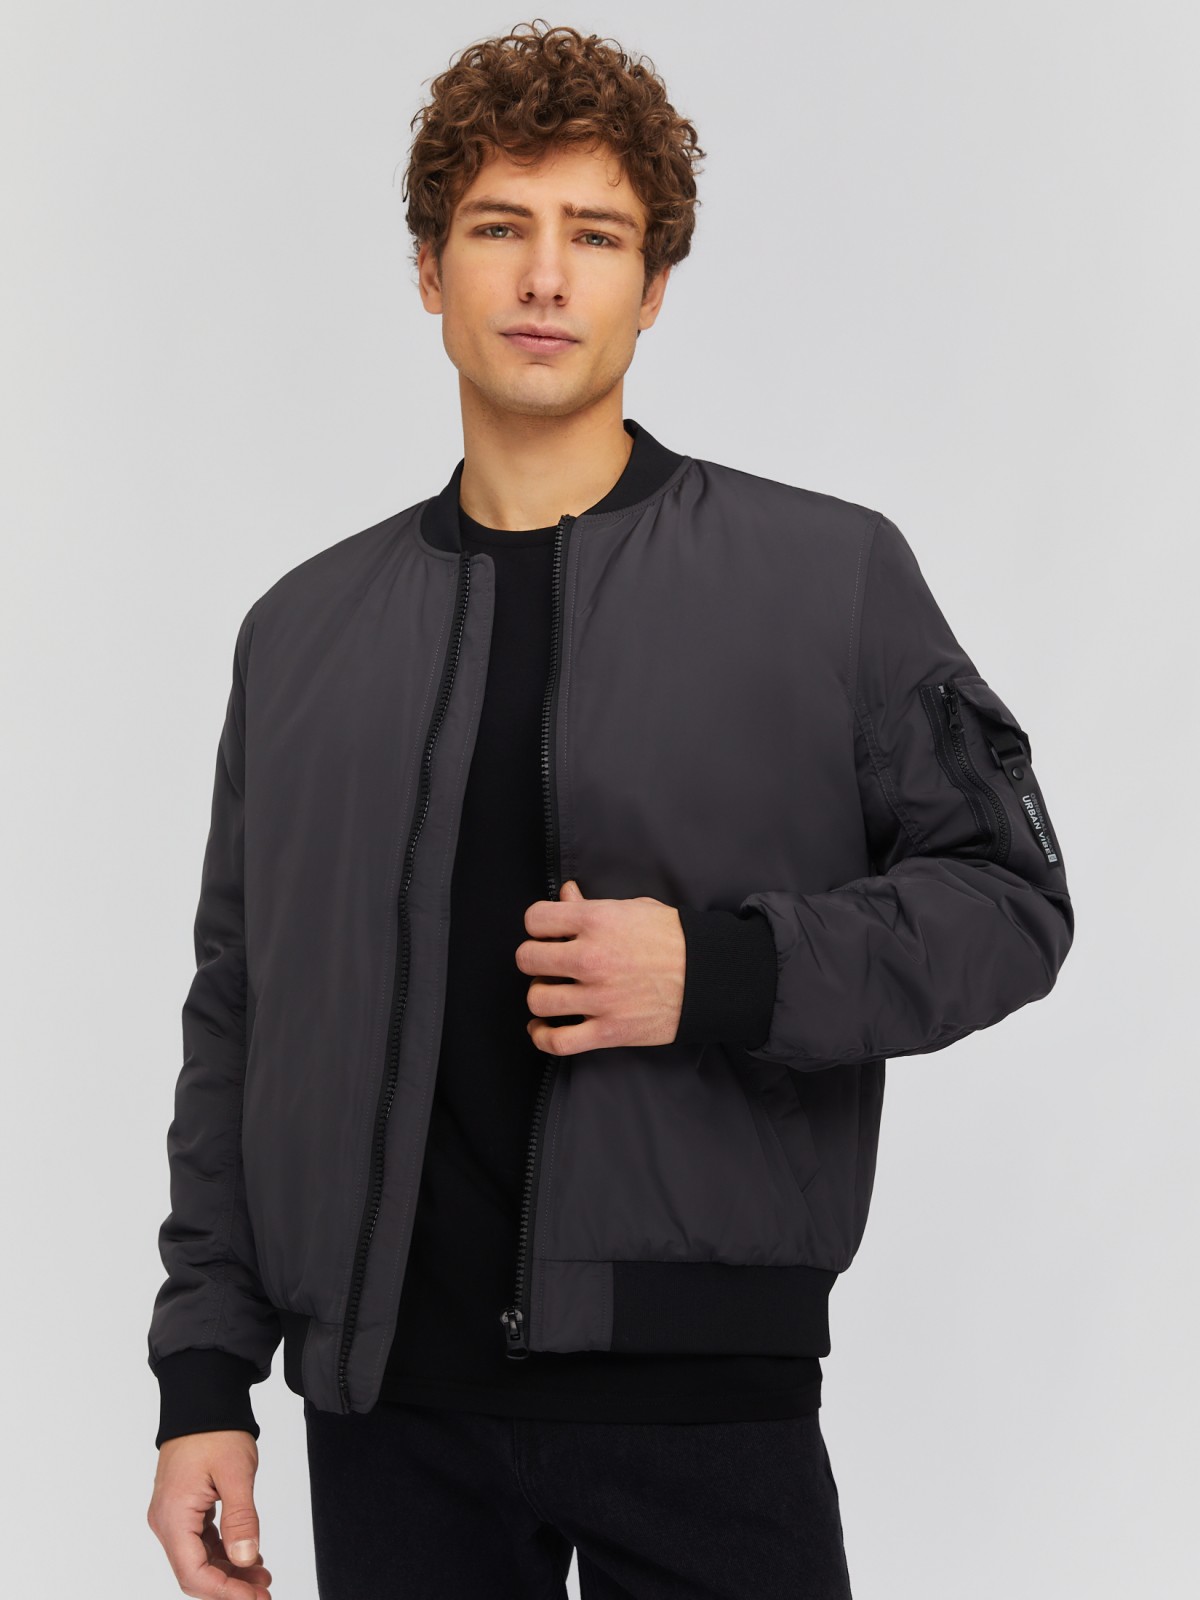 Утеплённая куртка-бомбер с воротником-стойкой zolla 014135102014, цвет серый, размер M